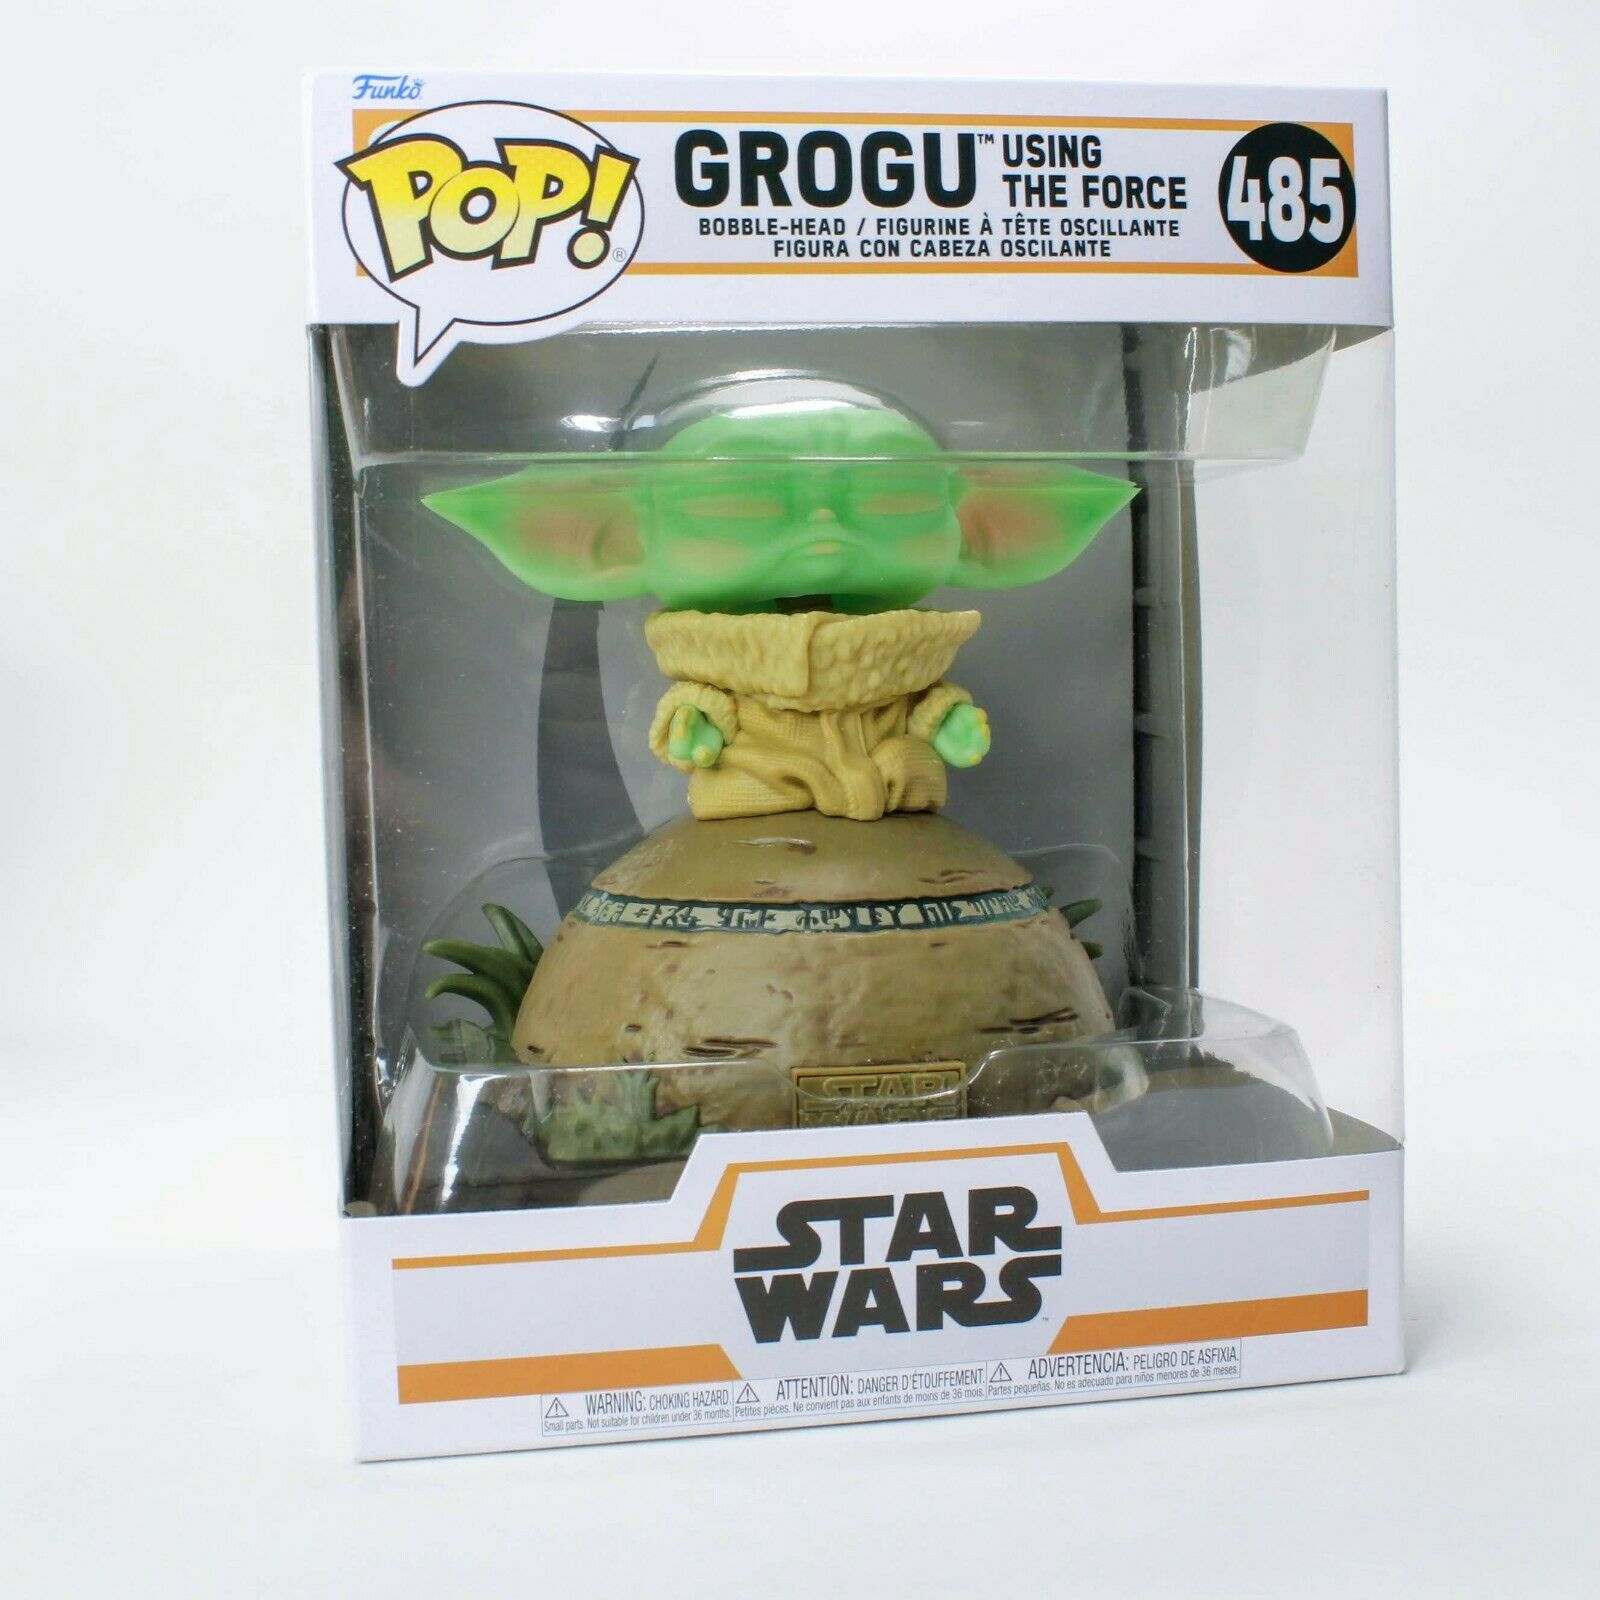 Funko Pop The Mandalorian 485 Baby Yoda Grogu Using the Force